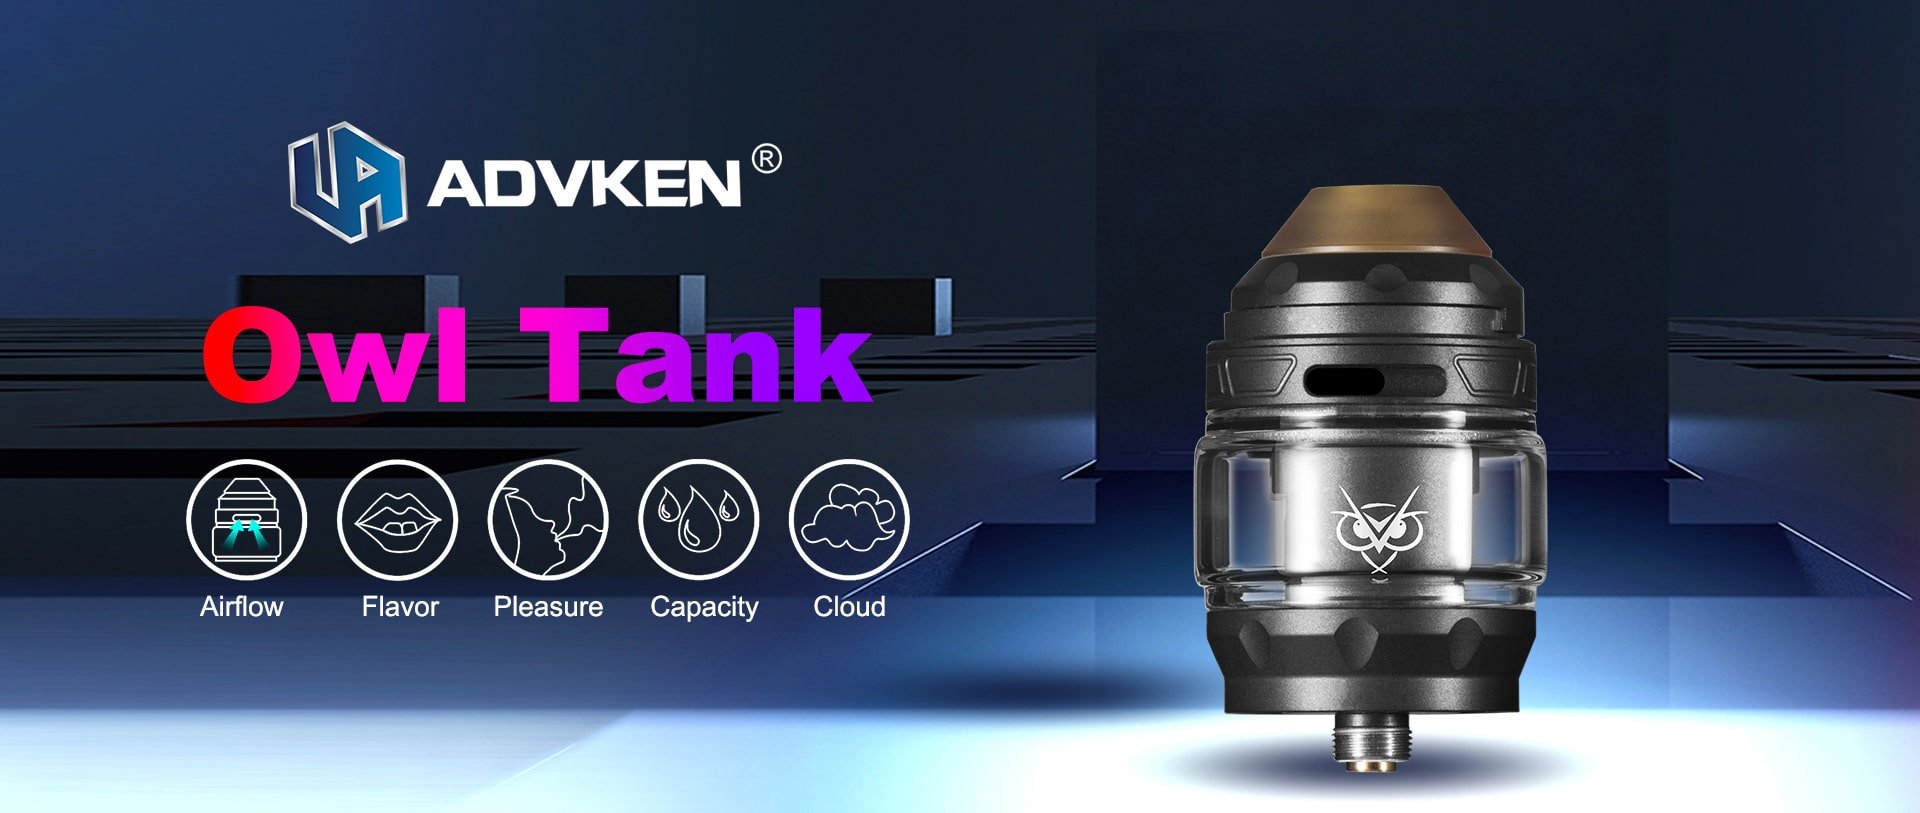 Advken Owl Tank